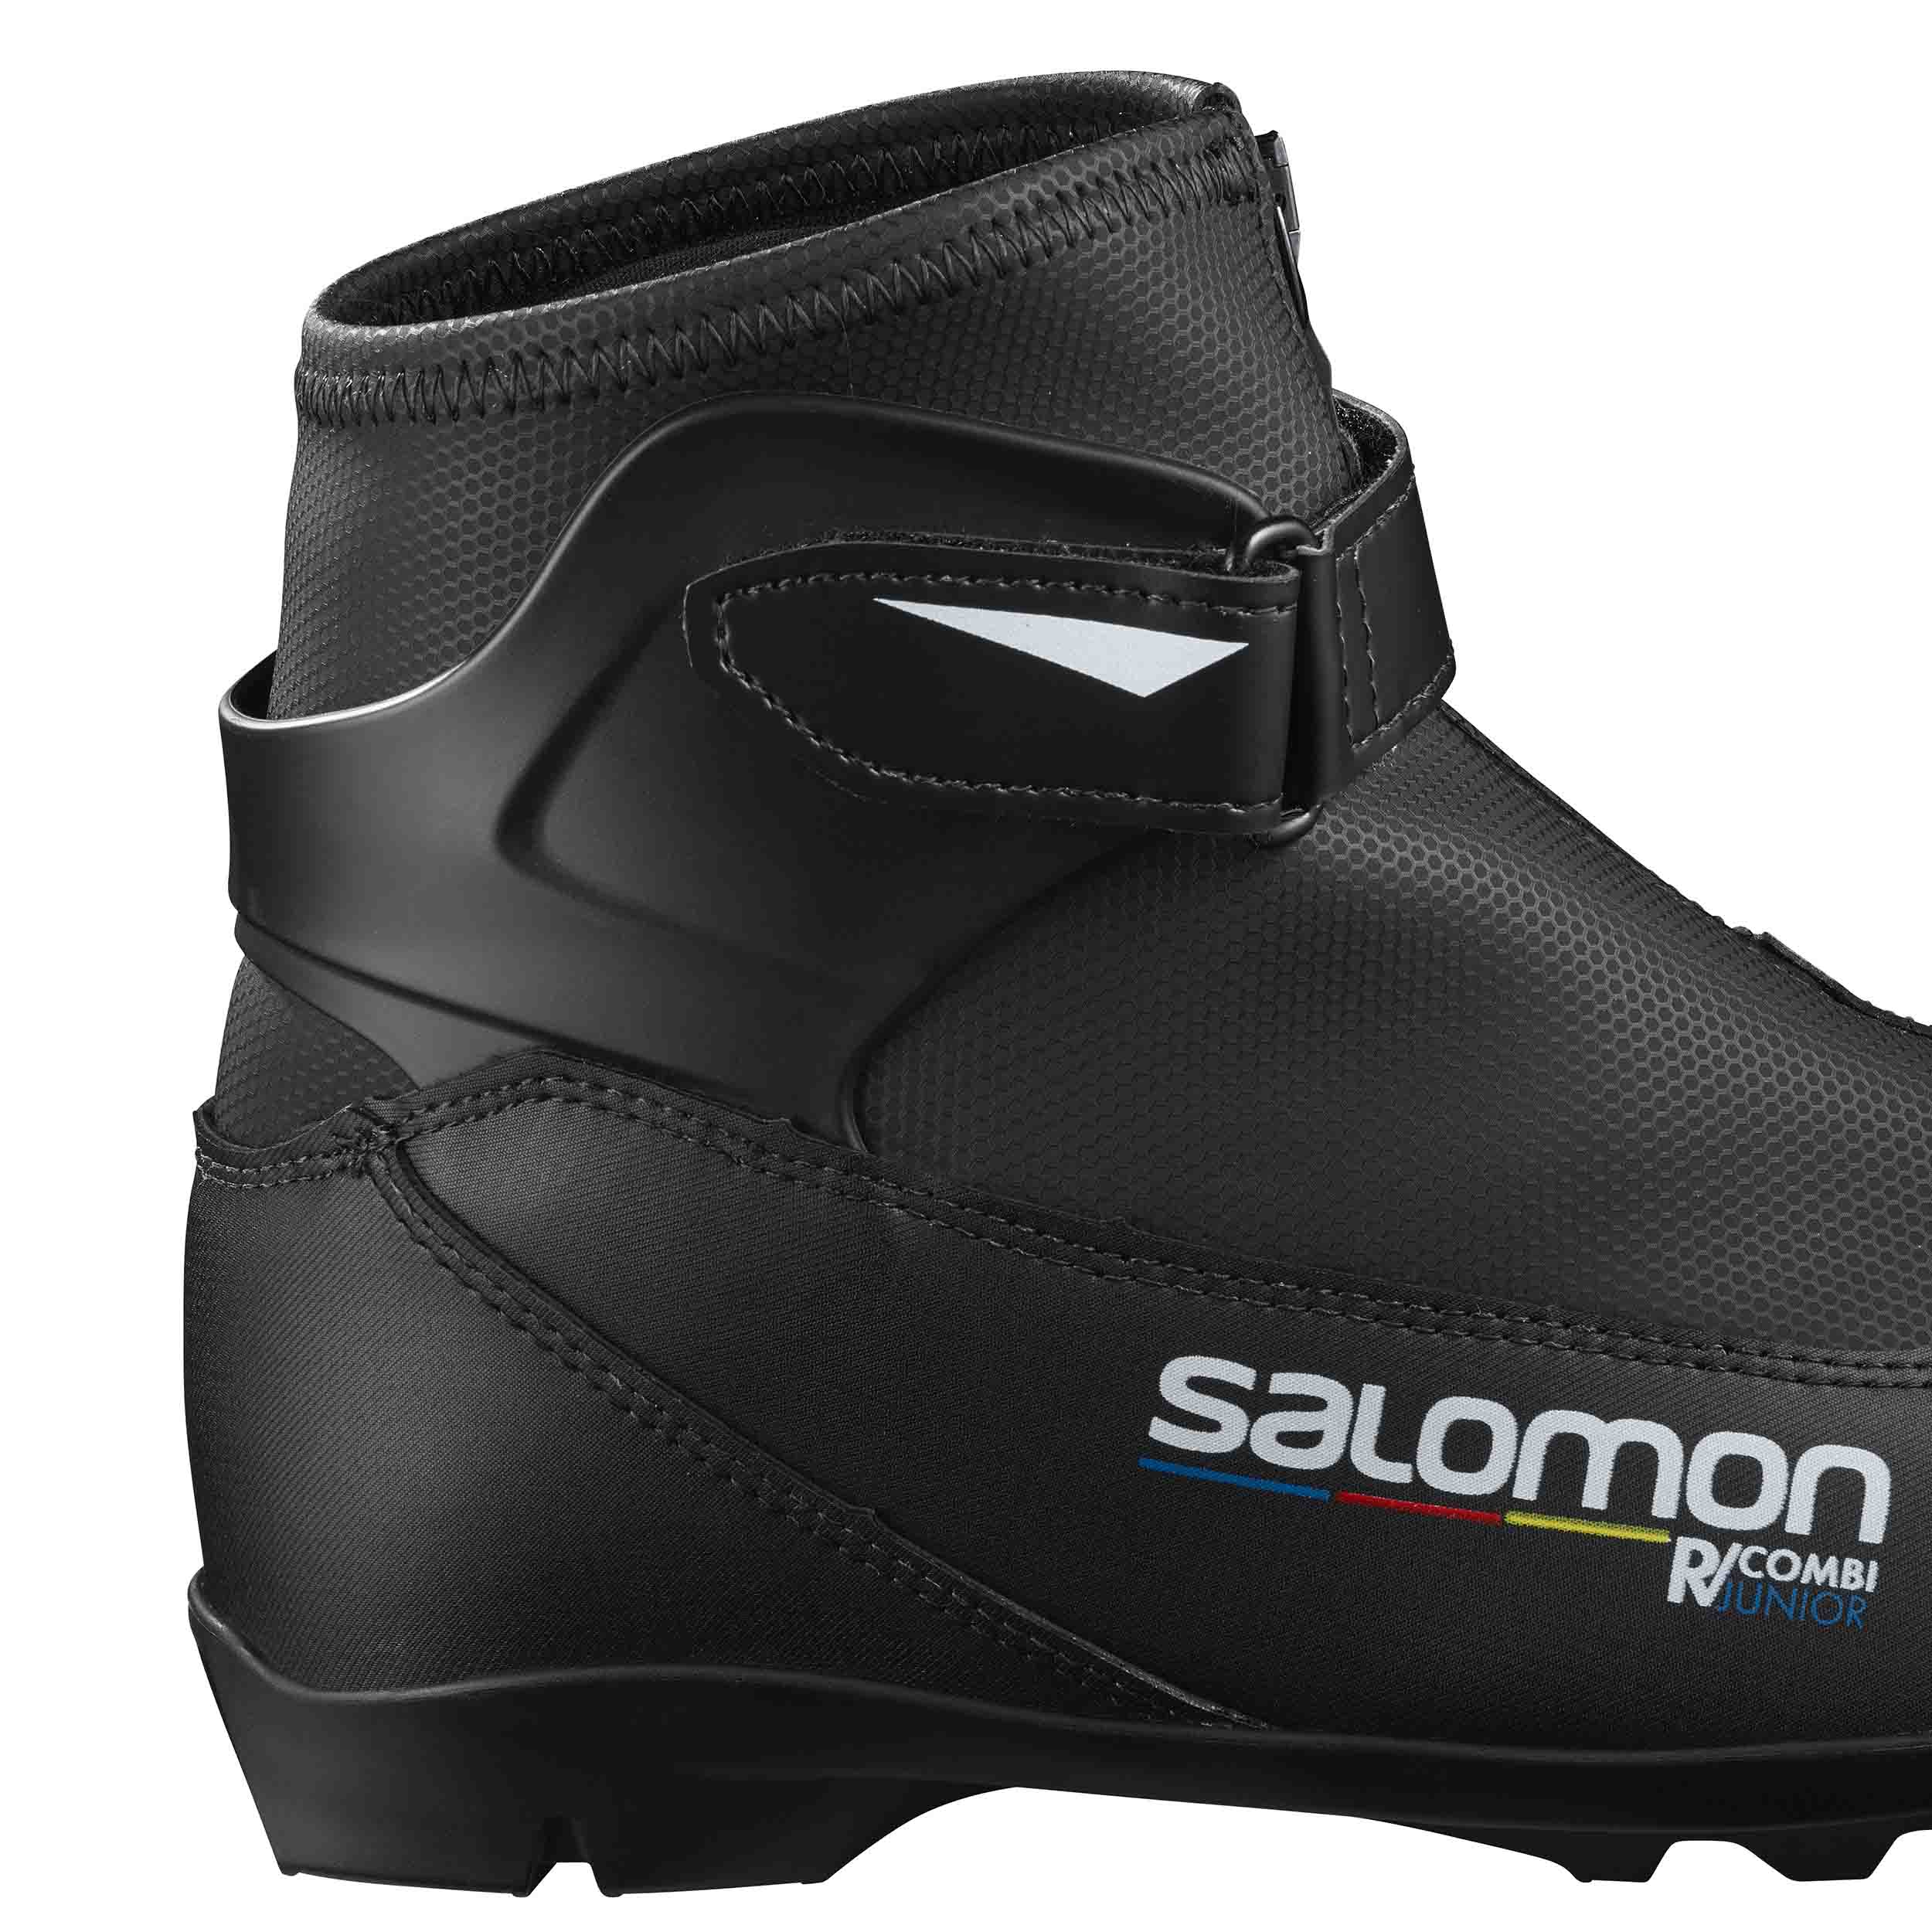 Dětské boty na běžky Salomon R/COMBI Pilot JR | David sport Harrachov